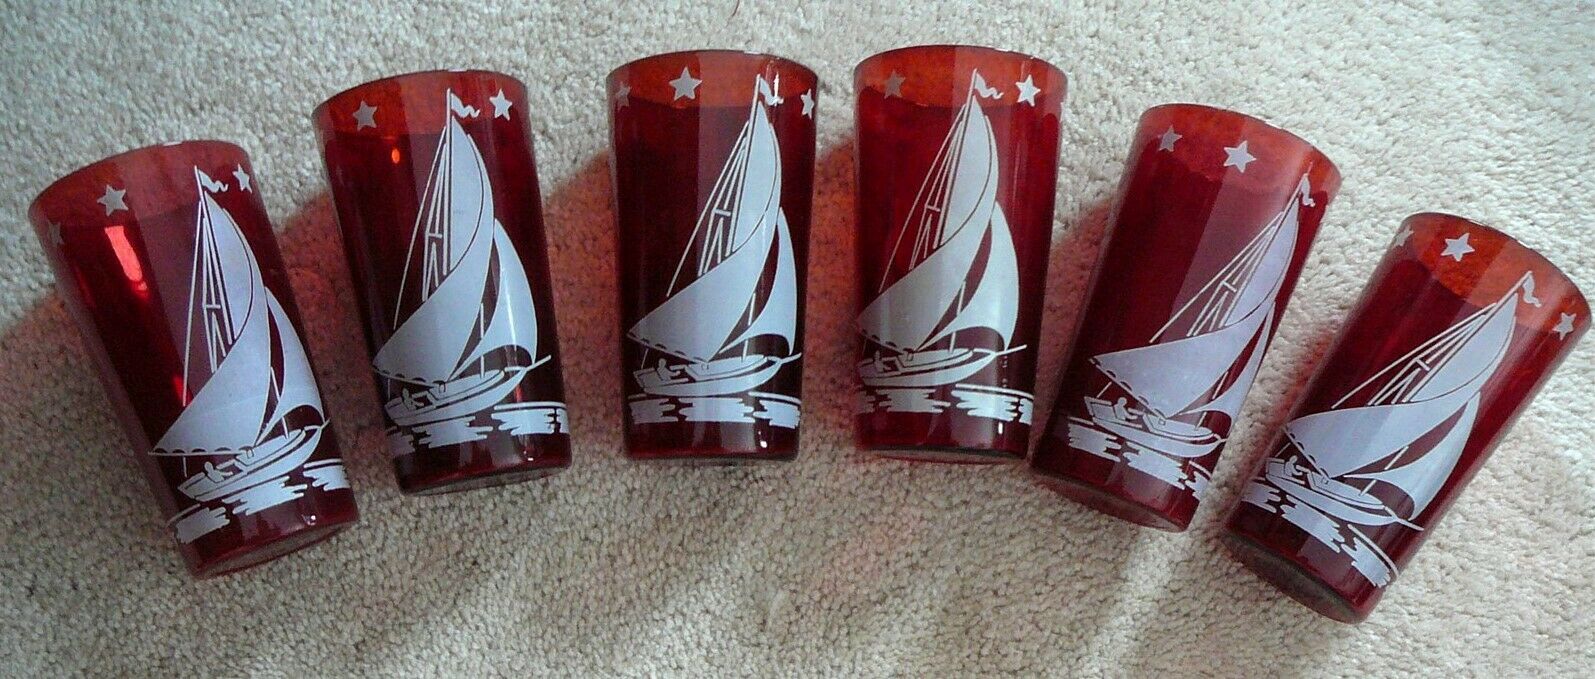 Vtg Art Deco Depression Glass Set 6 Ruby Red Tumblers White Sailboats & Stars Ex